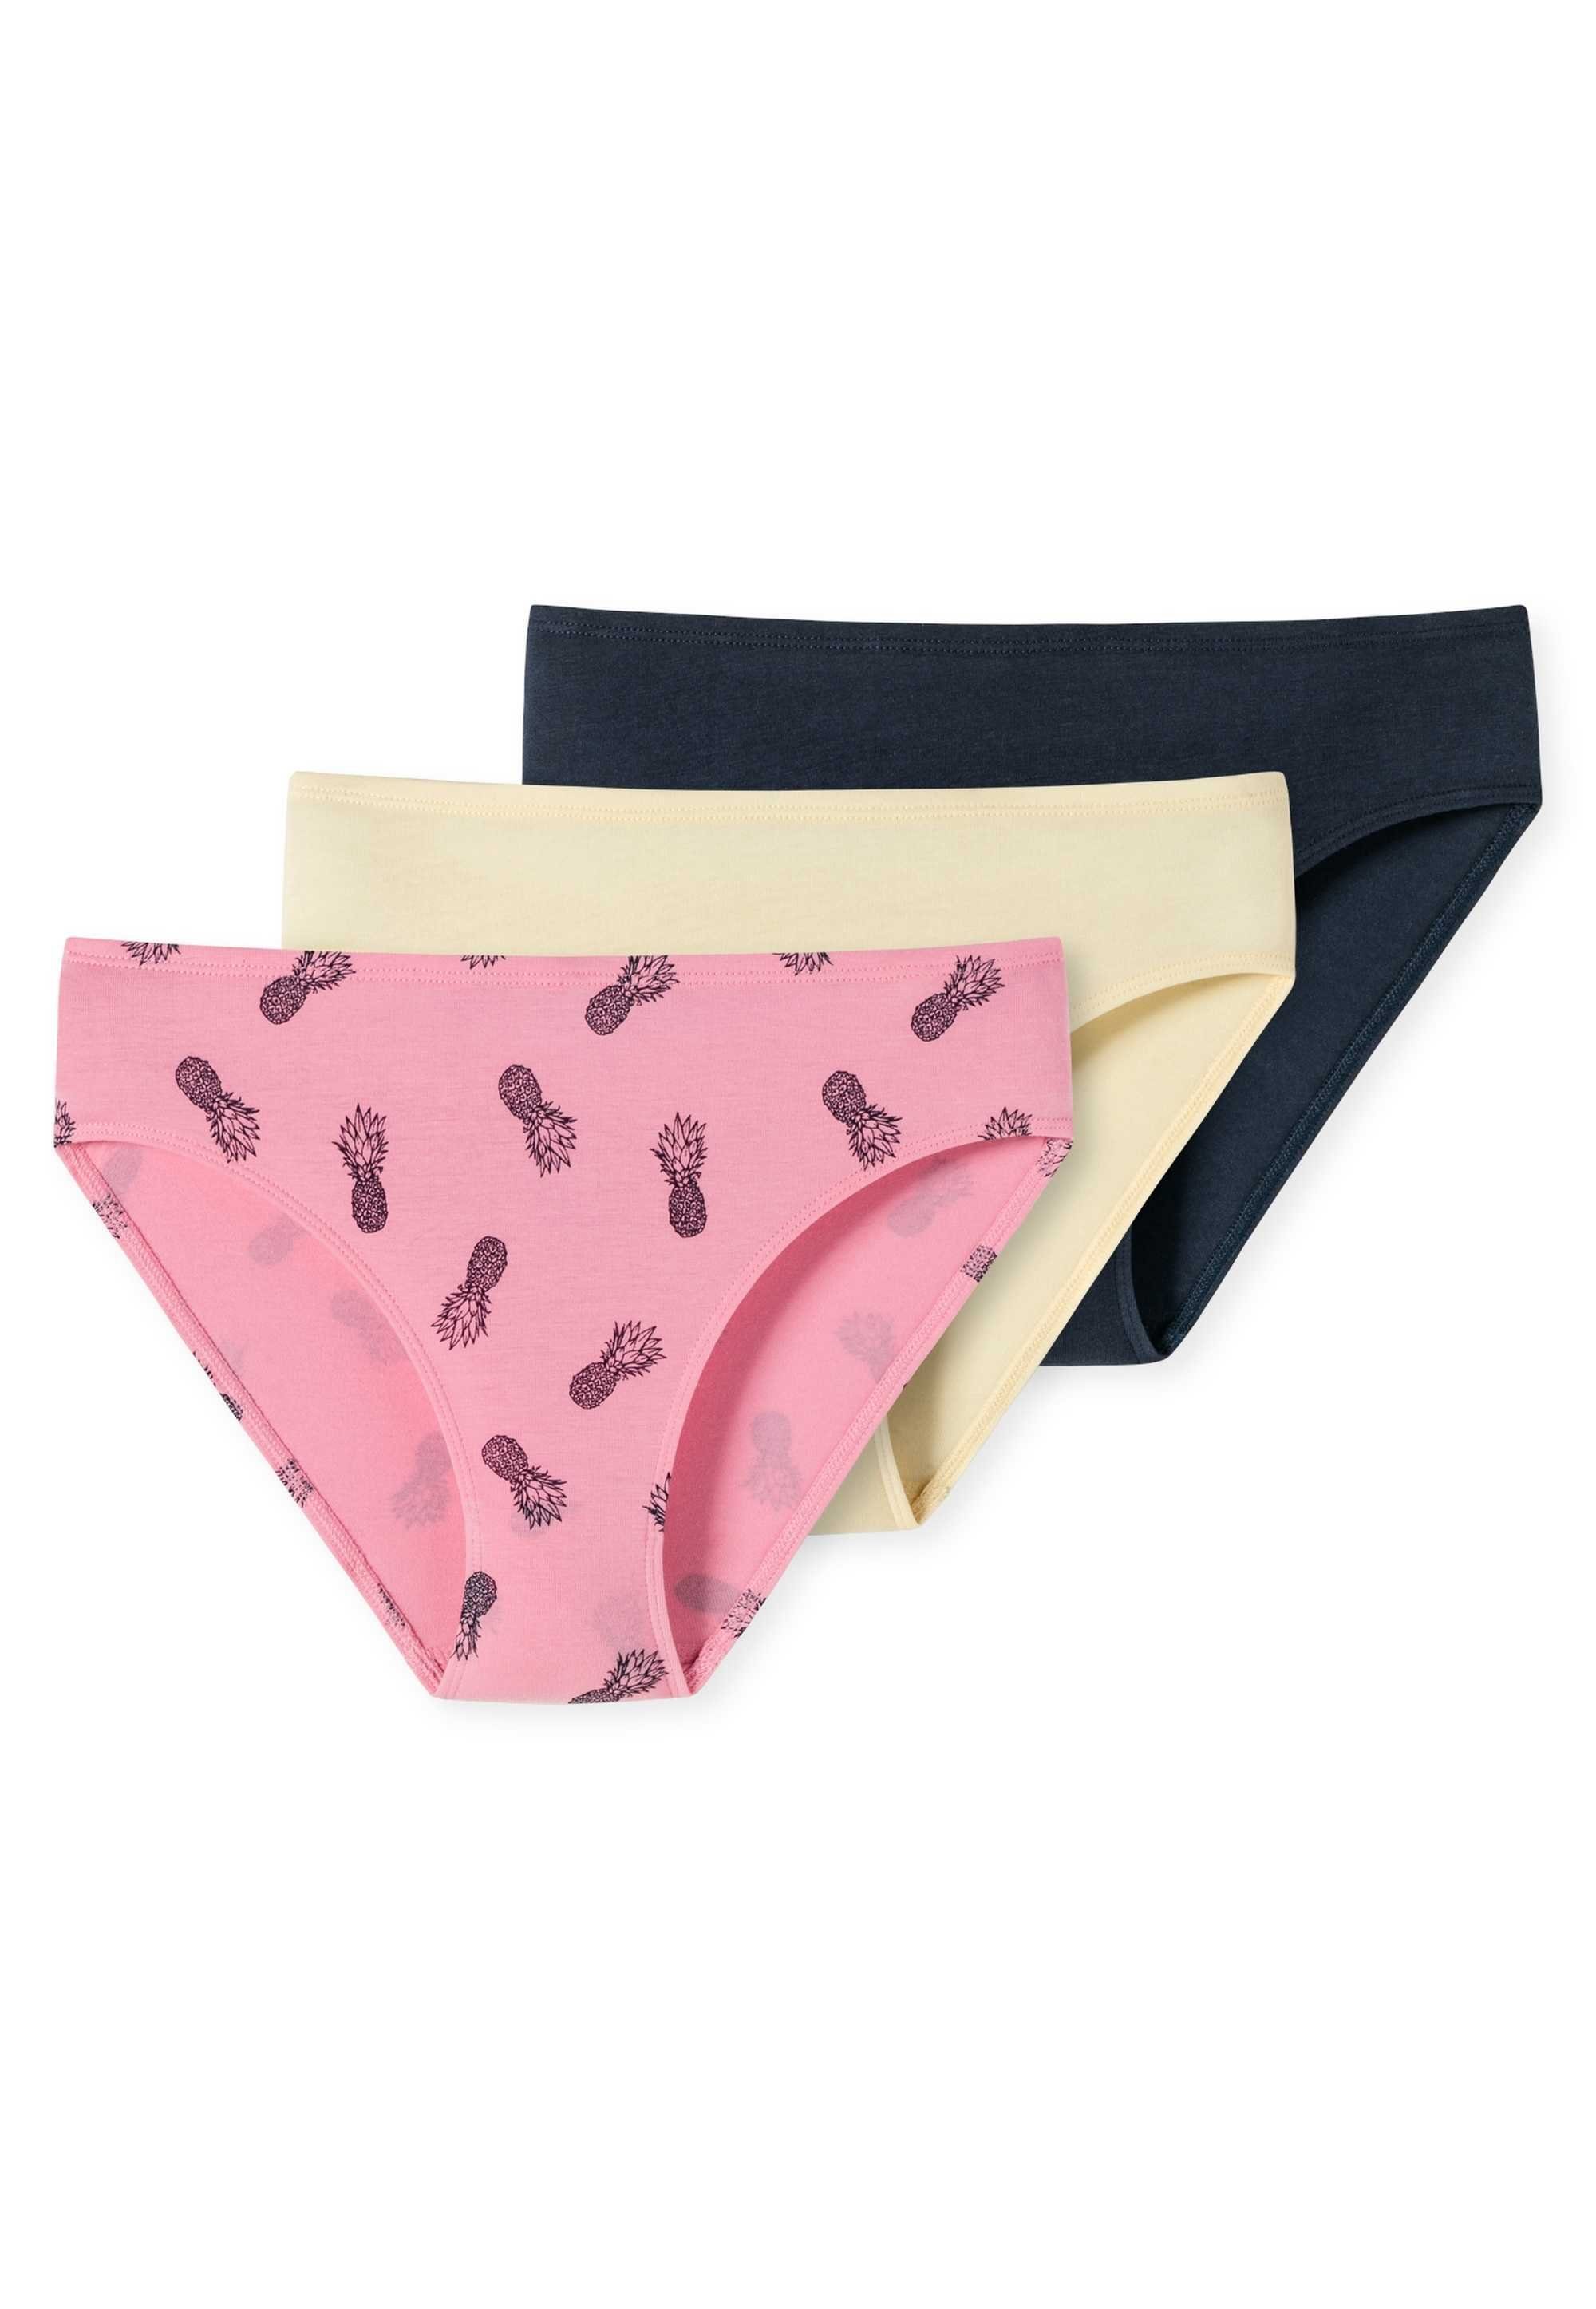 Schiesser Slip Mädchen Slips 3er Pack - Unterhose, Single Jersey Pink/Gelb/Dunkelblau